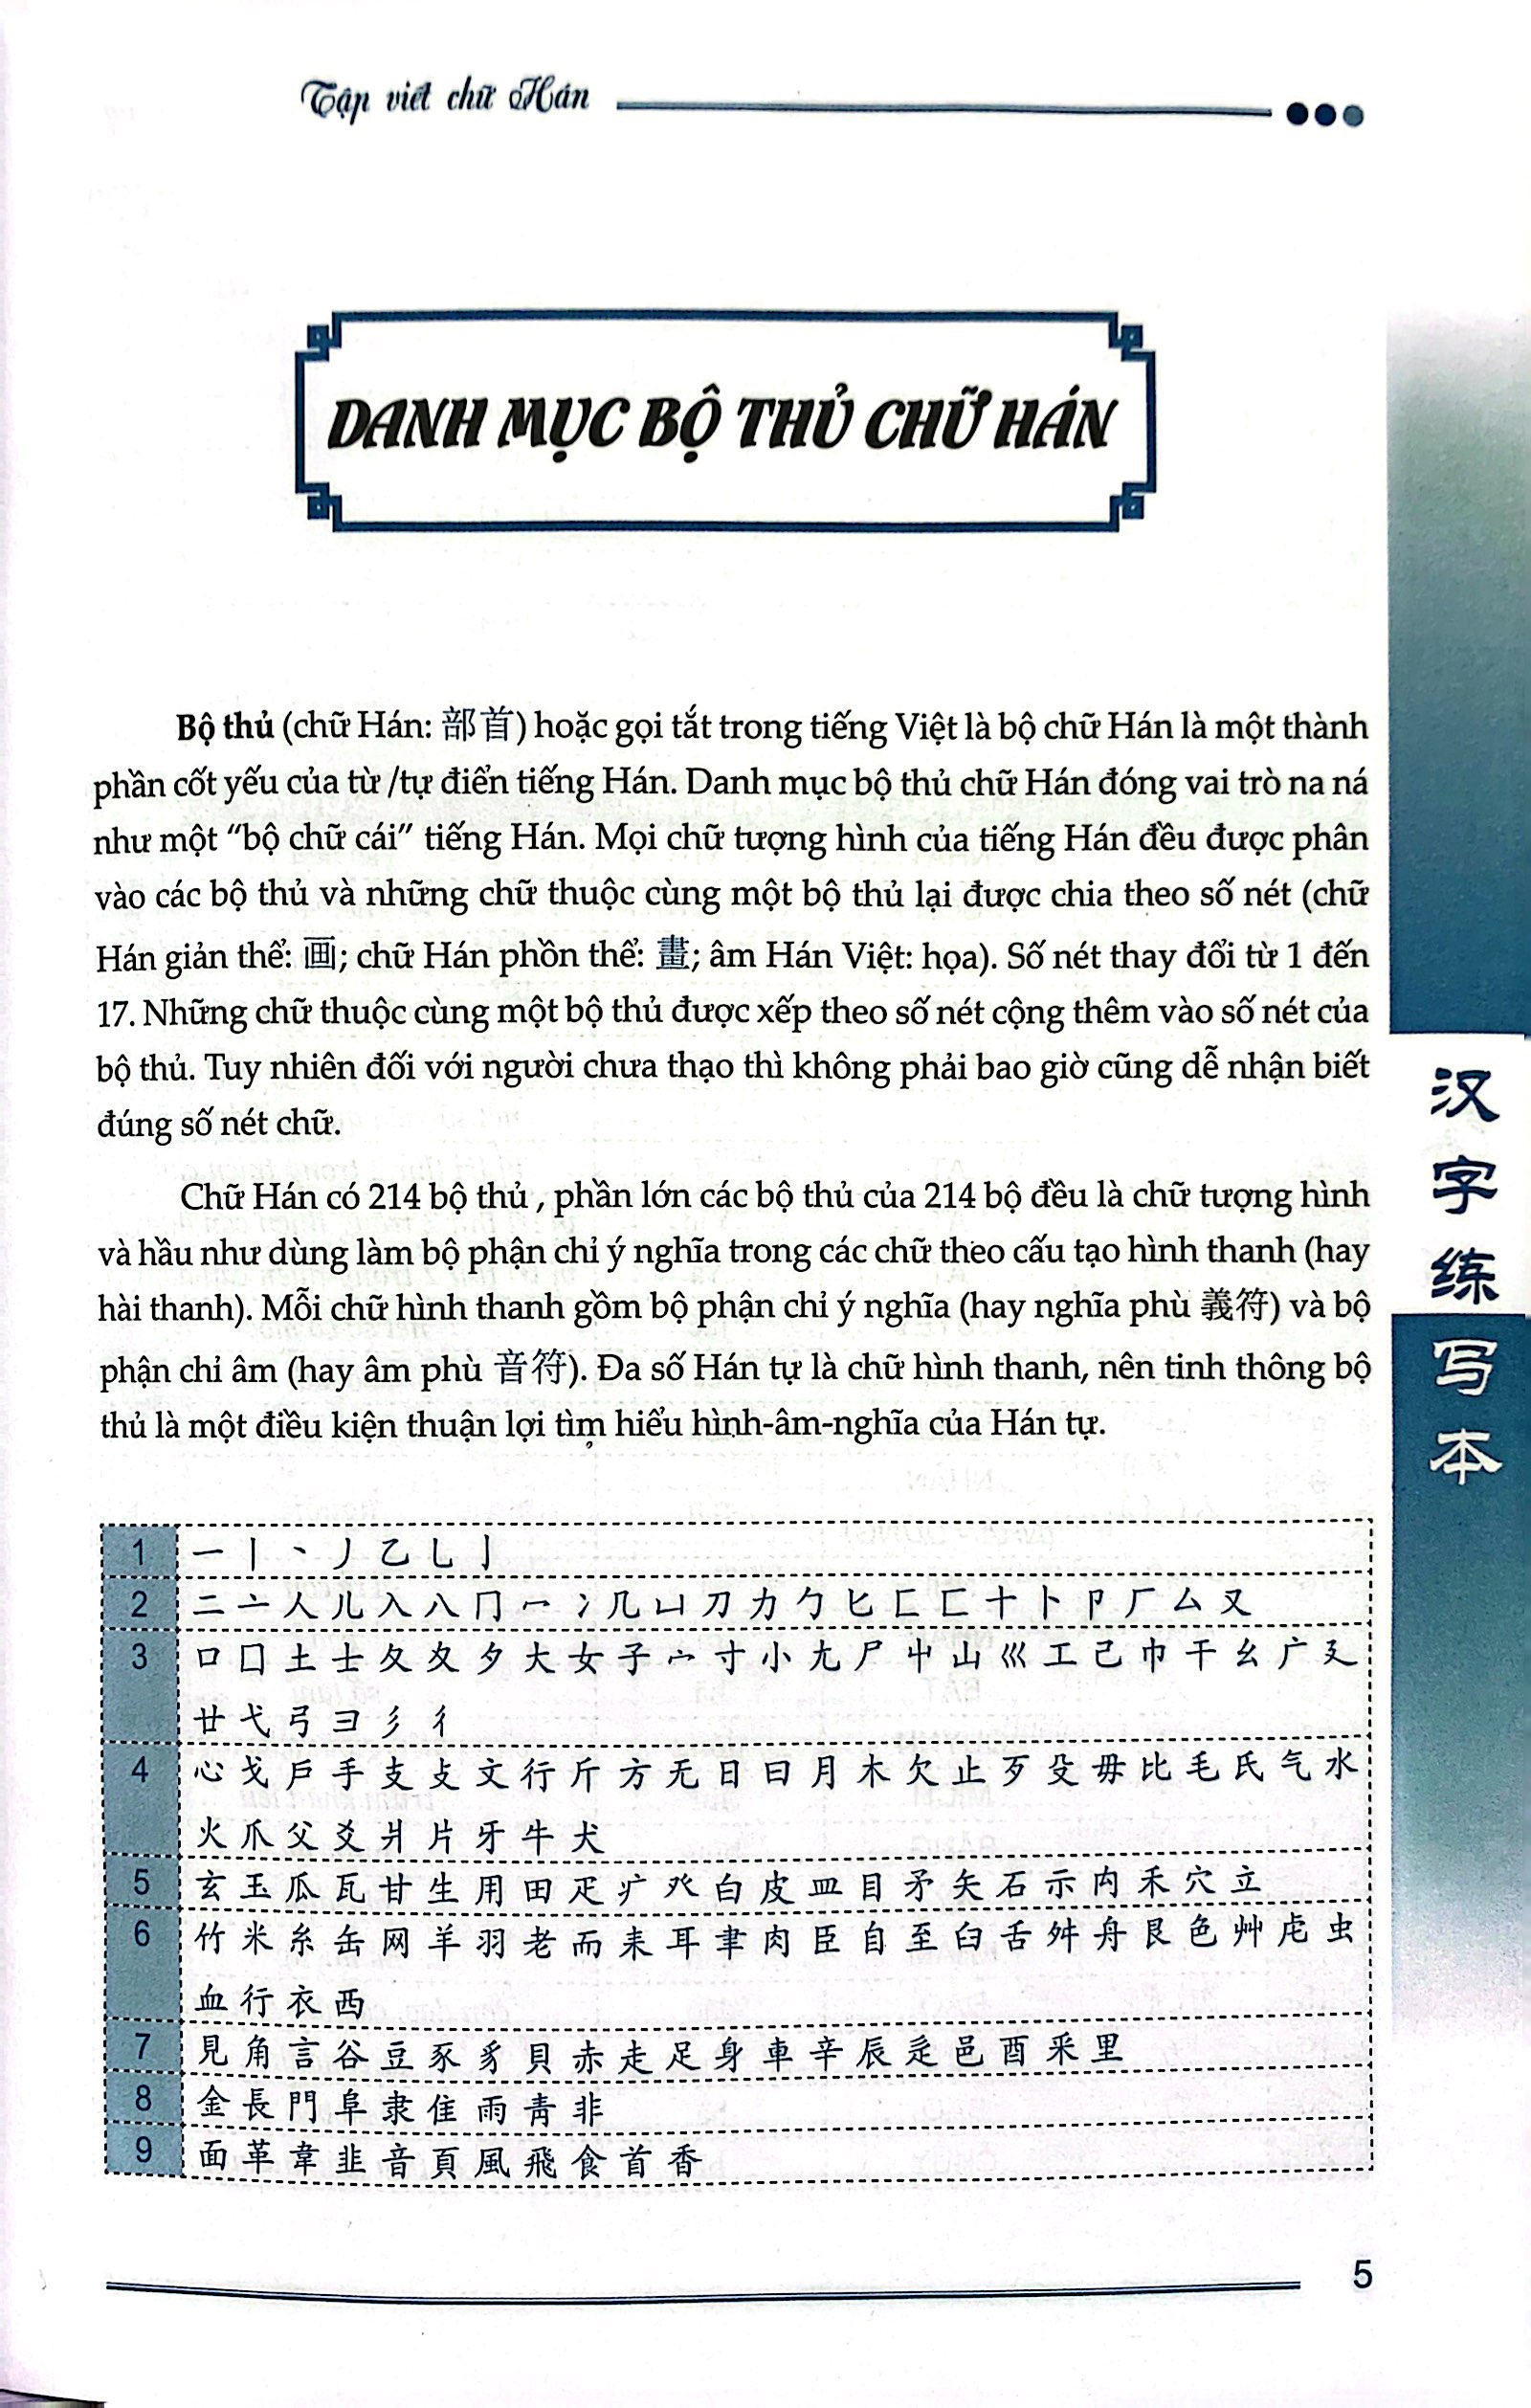 Tập Viết Chữ Hán - Phiên Bản Mới PDF